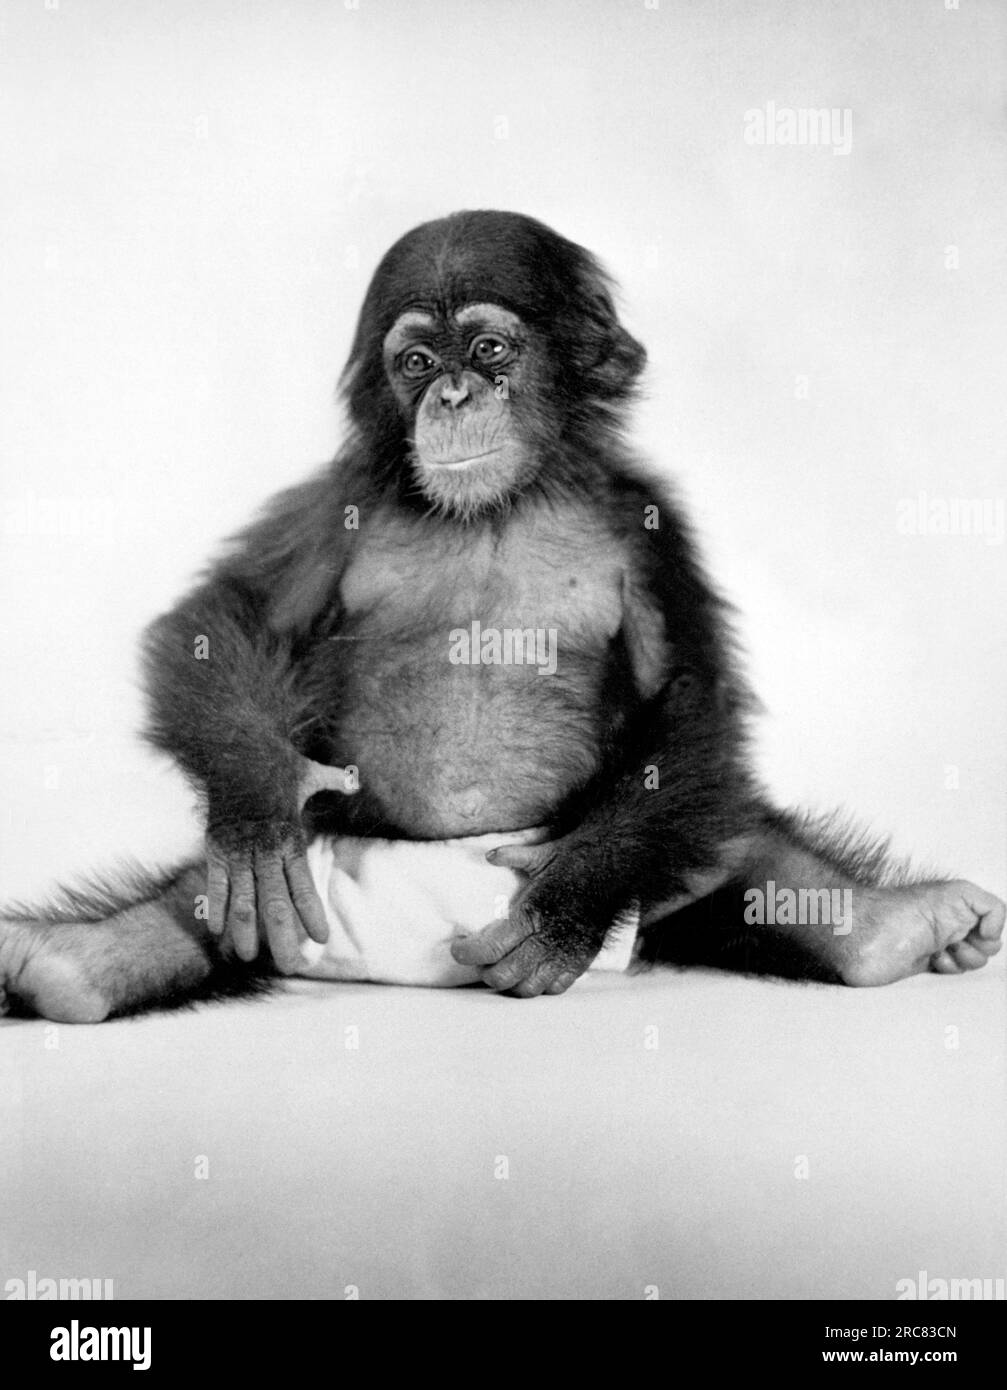 Orange Park, Florida: April 1940. Little Alf, sechs Monate alt, in den Yale Laboratorien von Primate Biology in Florida. Er war der erste Sohn von Alpha, der der erste Schimpanse war, der am YLPB geboren wurde. Er wurde 1962 in einer Ernährungsstudie benutzt und dann geopfert. Er wäre 23 gewesen, als er getötet wurde. Stockfoto